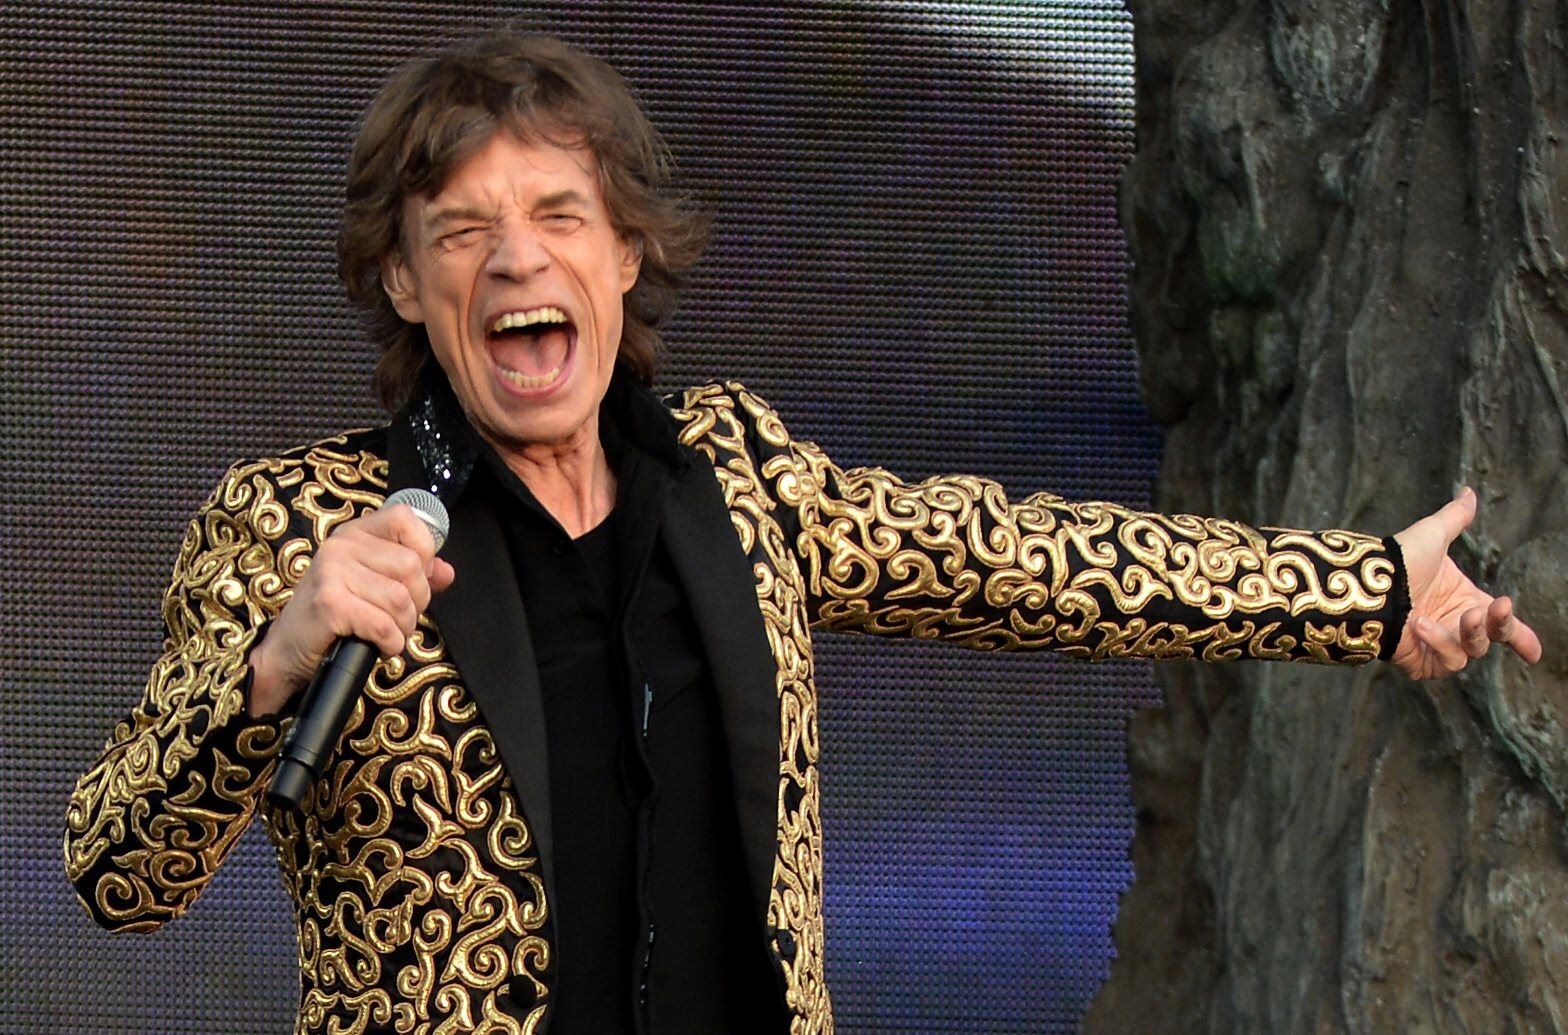 Rolling Stones werken aan een nieuw album